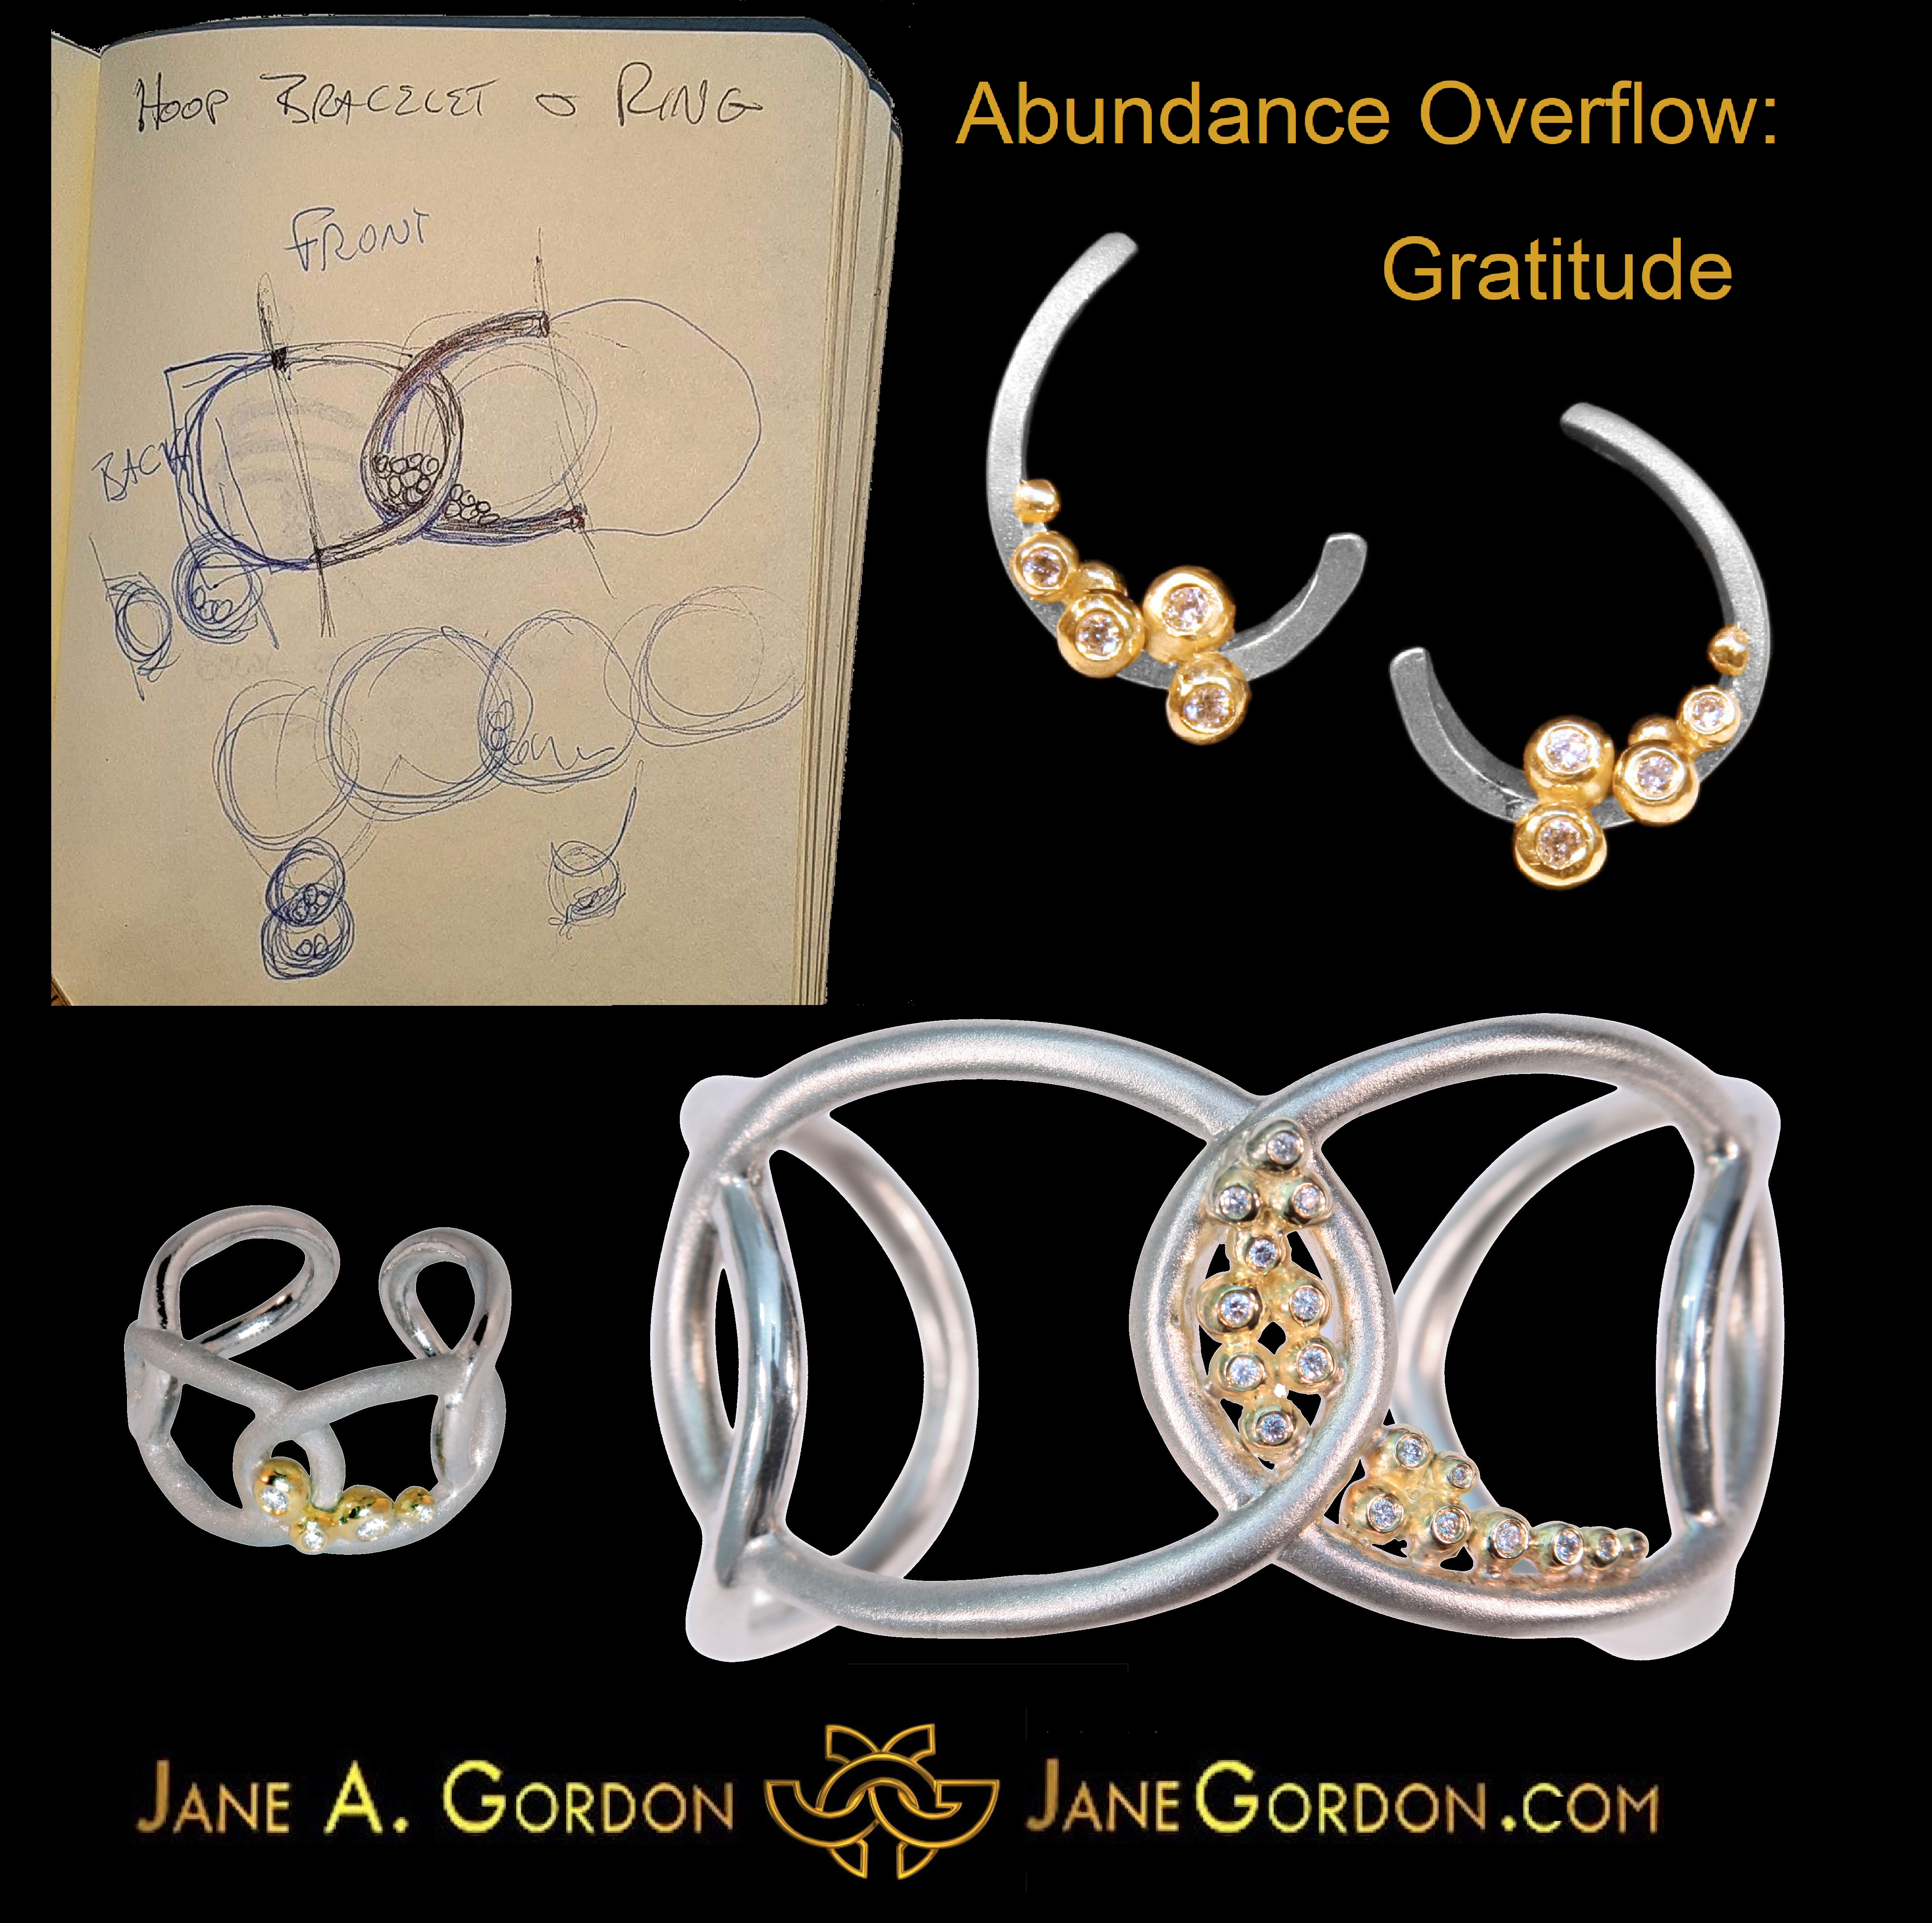 Abundance Overflow: Gratitude